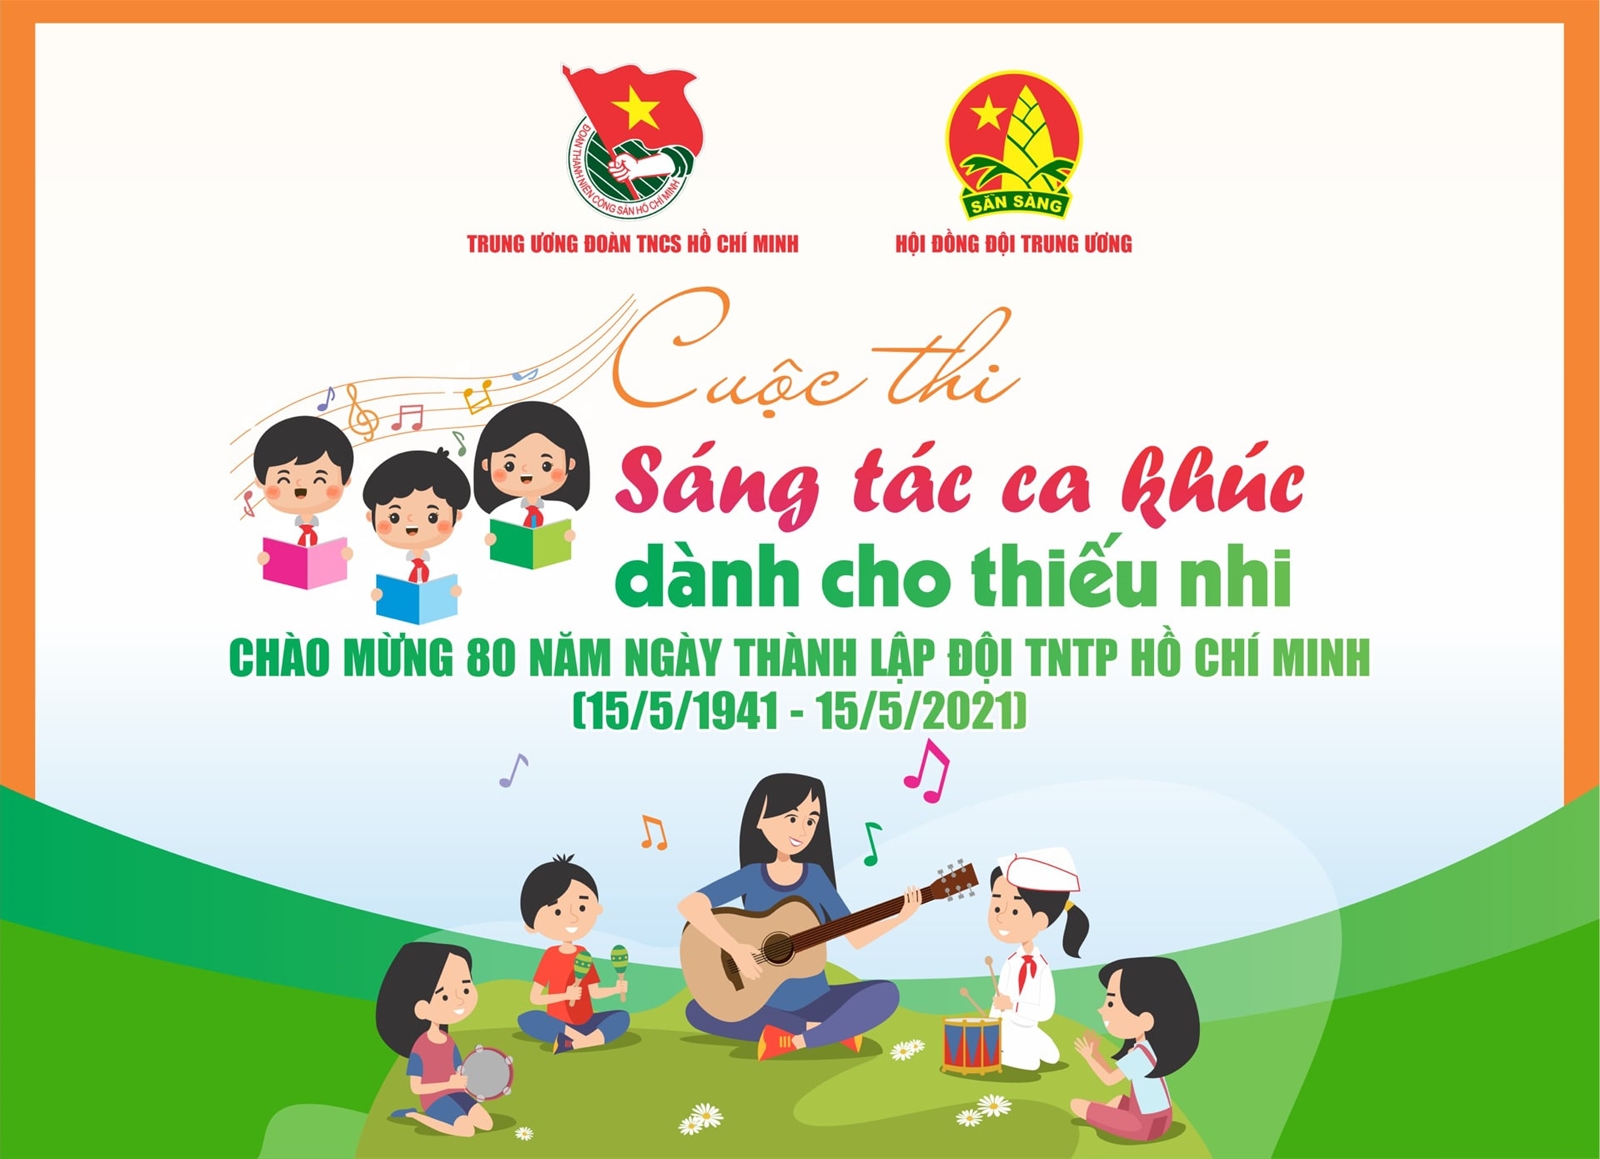 Cuộc thi sáng tác ca khúc dành cho thiếu nhi chào mừng kỷ niệm 80 năm ngày thành lập Đội TNTP Hồ Chí Minh (15/5/1941 - 15/5/2021).